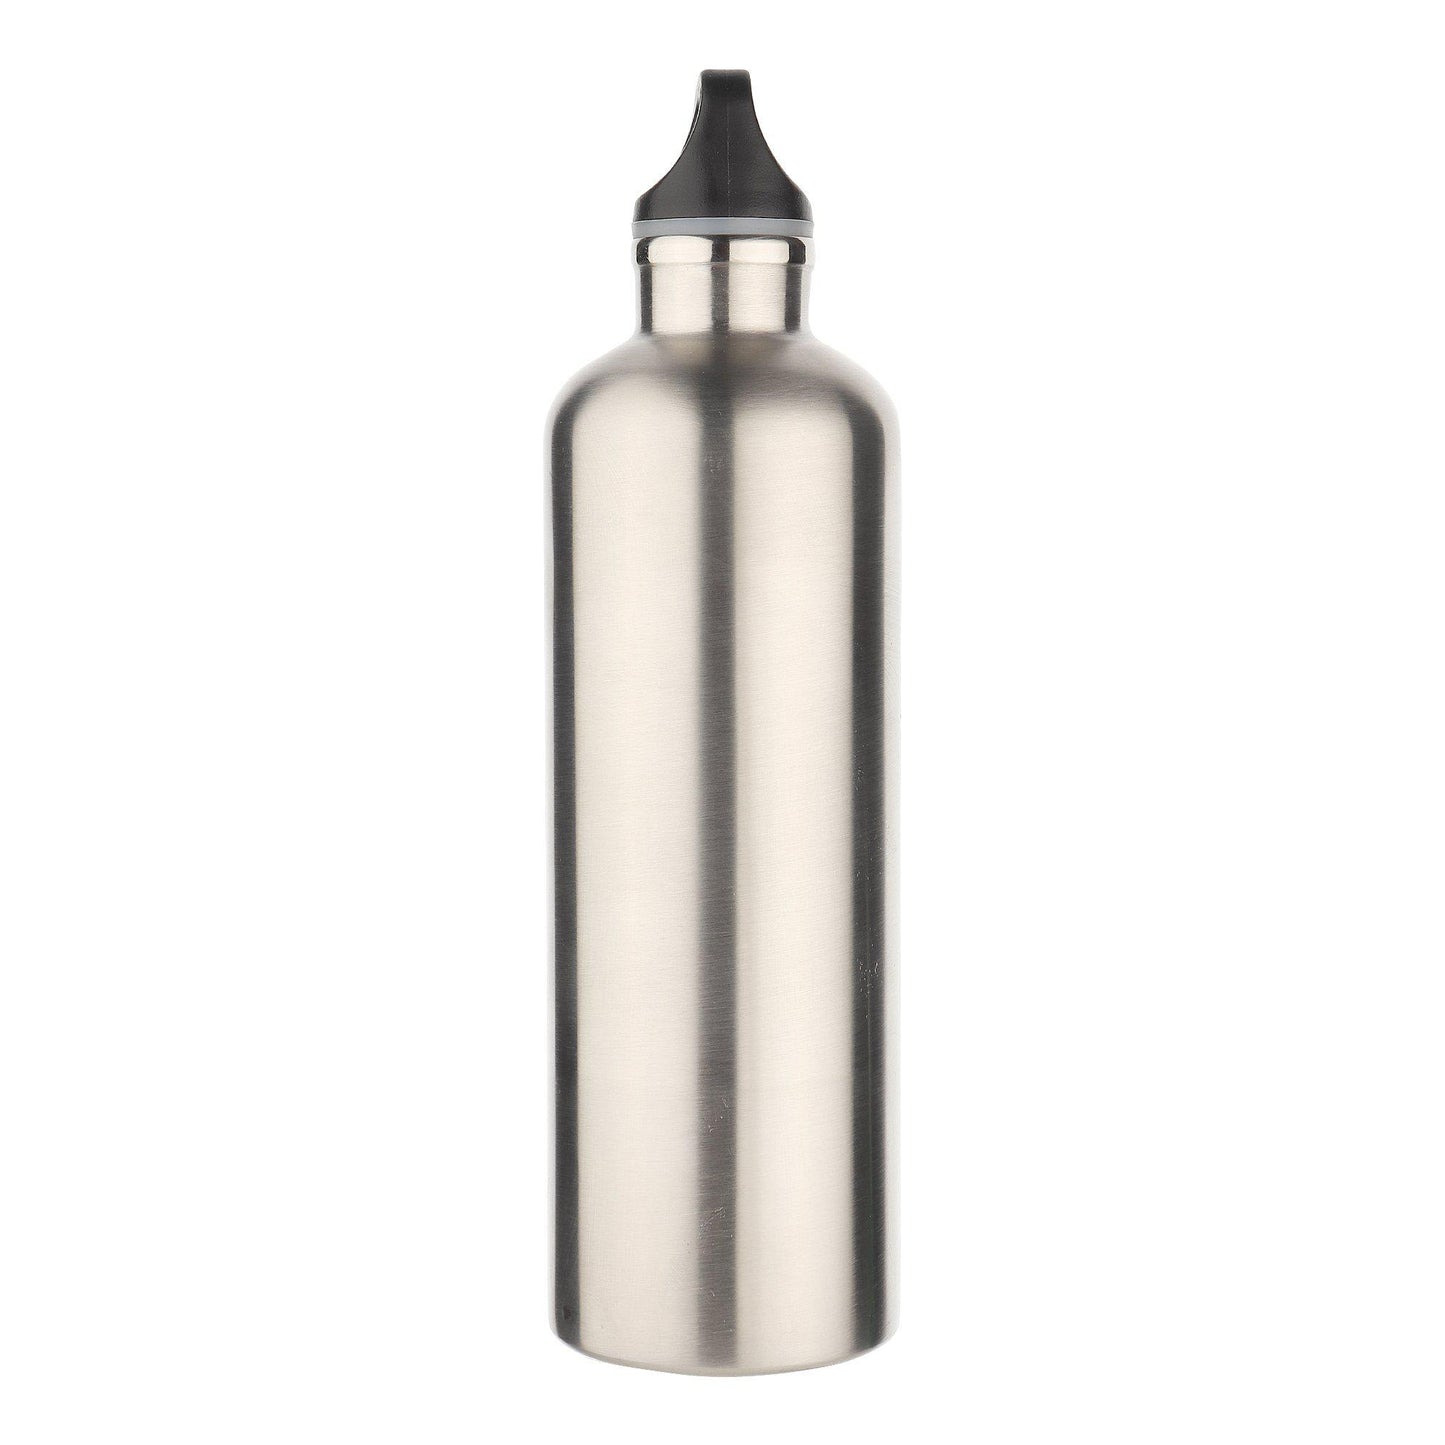 Free Leak Proof Stainless Steel Water Bottle